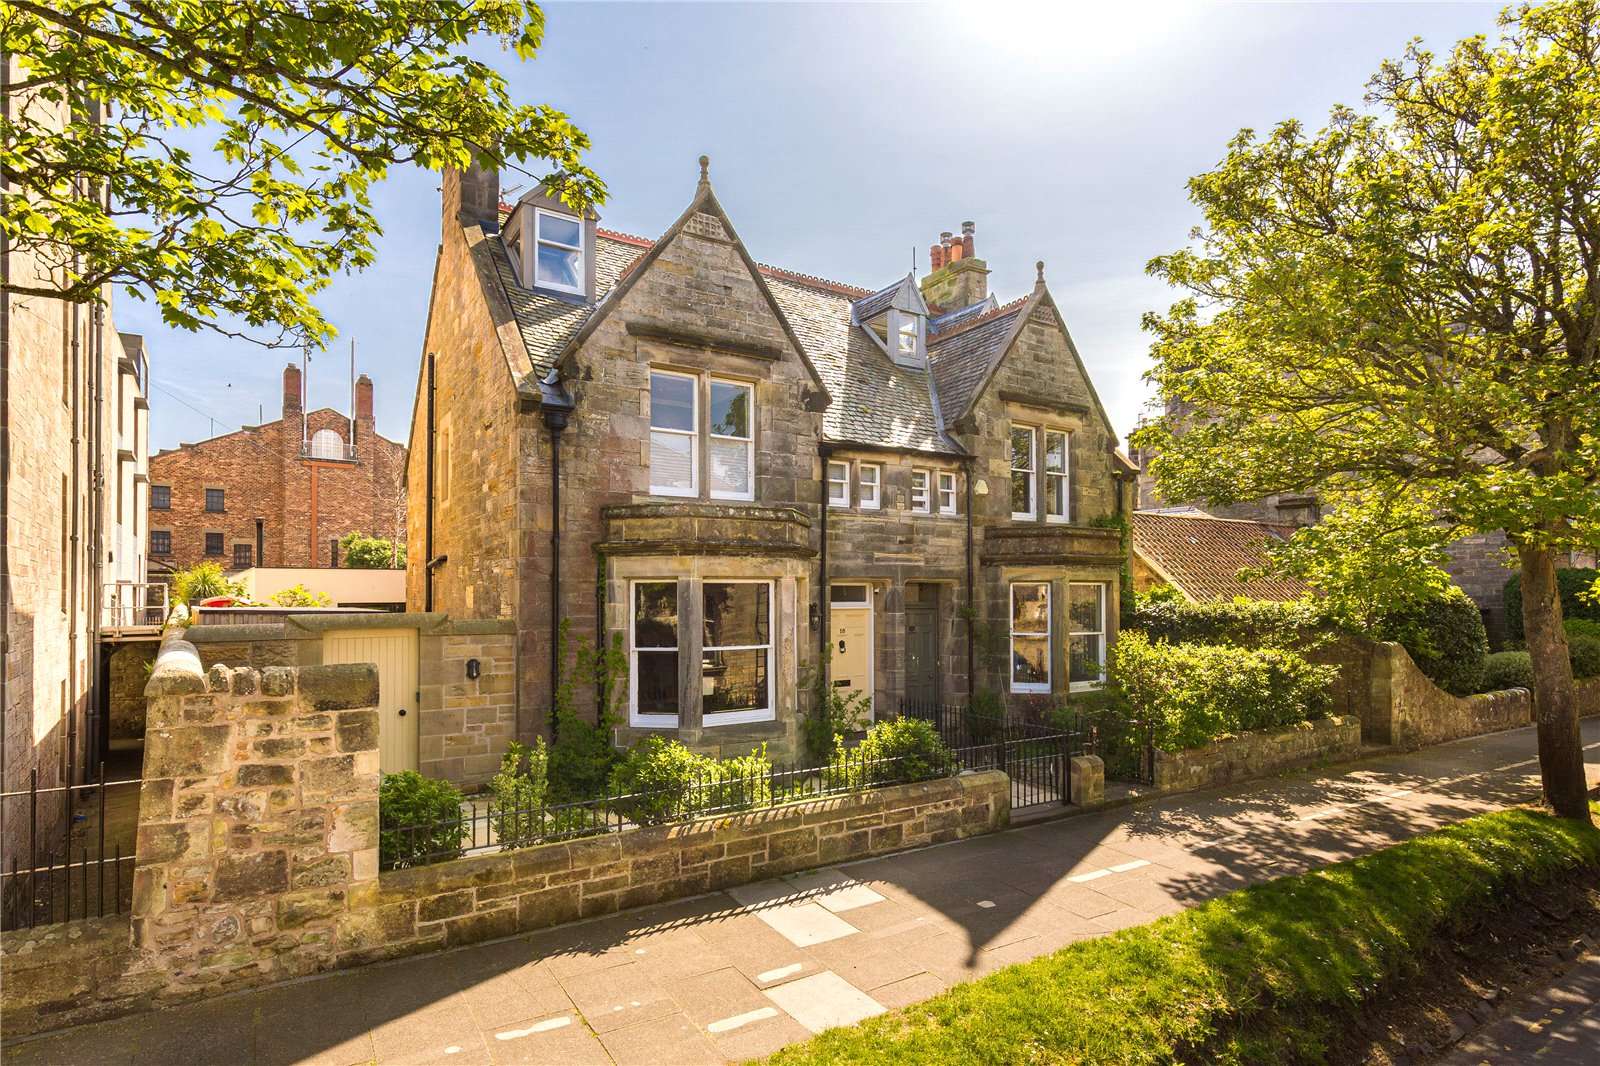 Family home on prestigious St Andrews street hits market for £4m